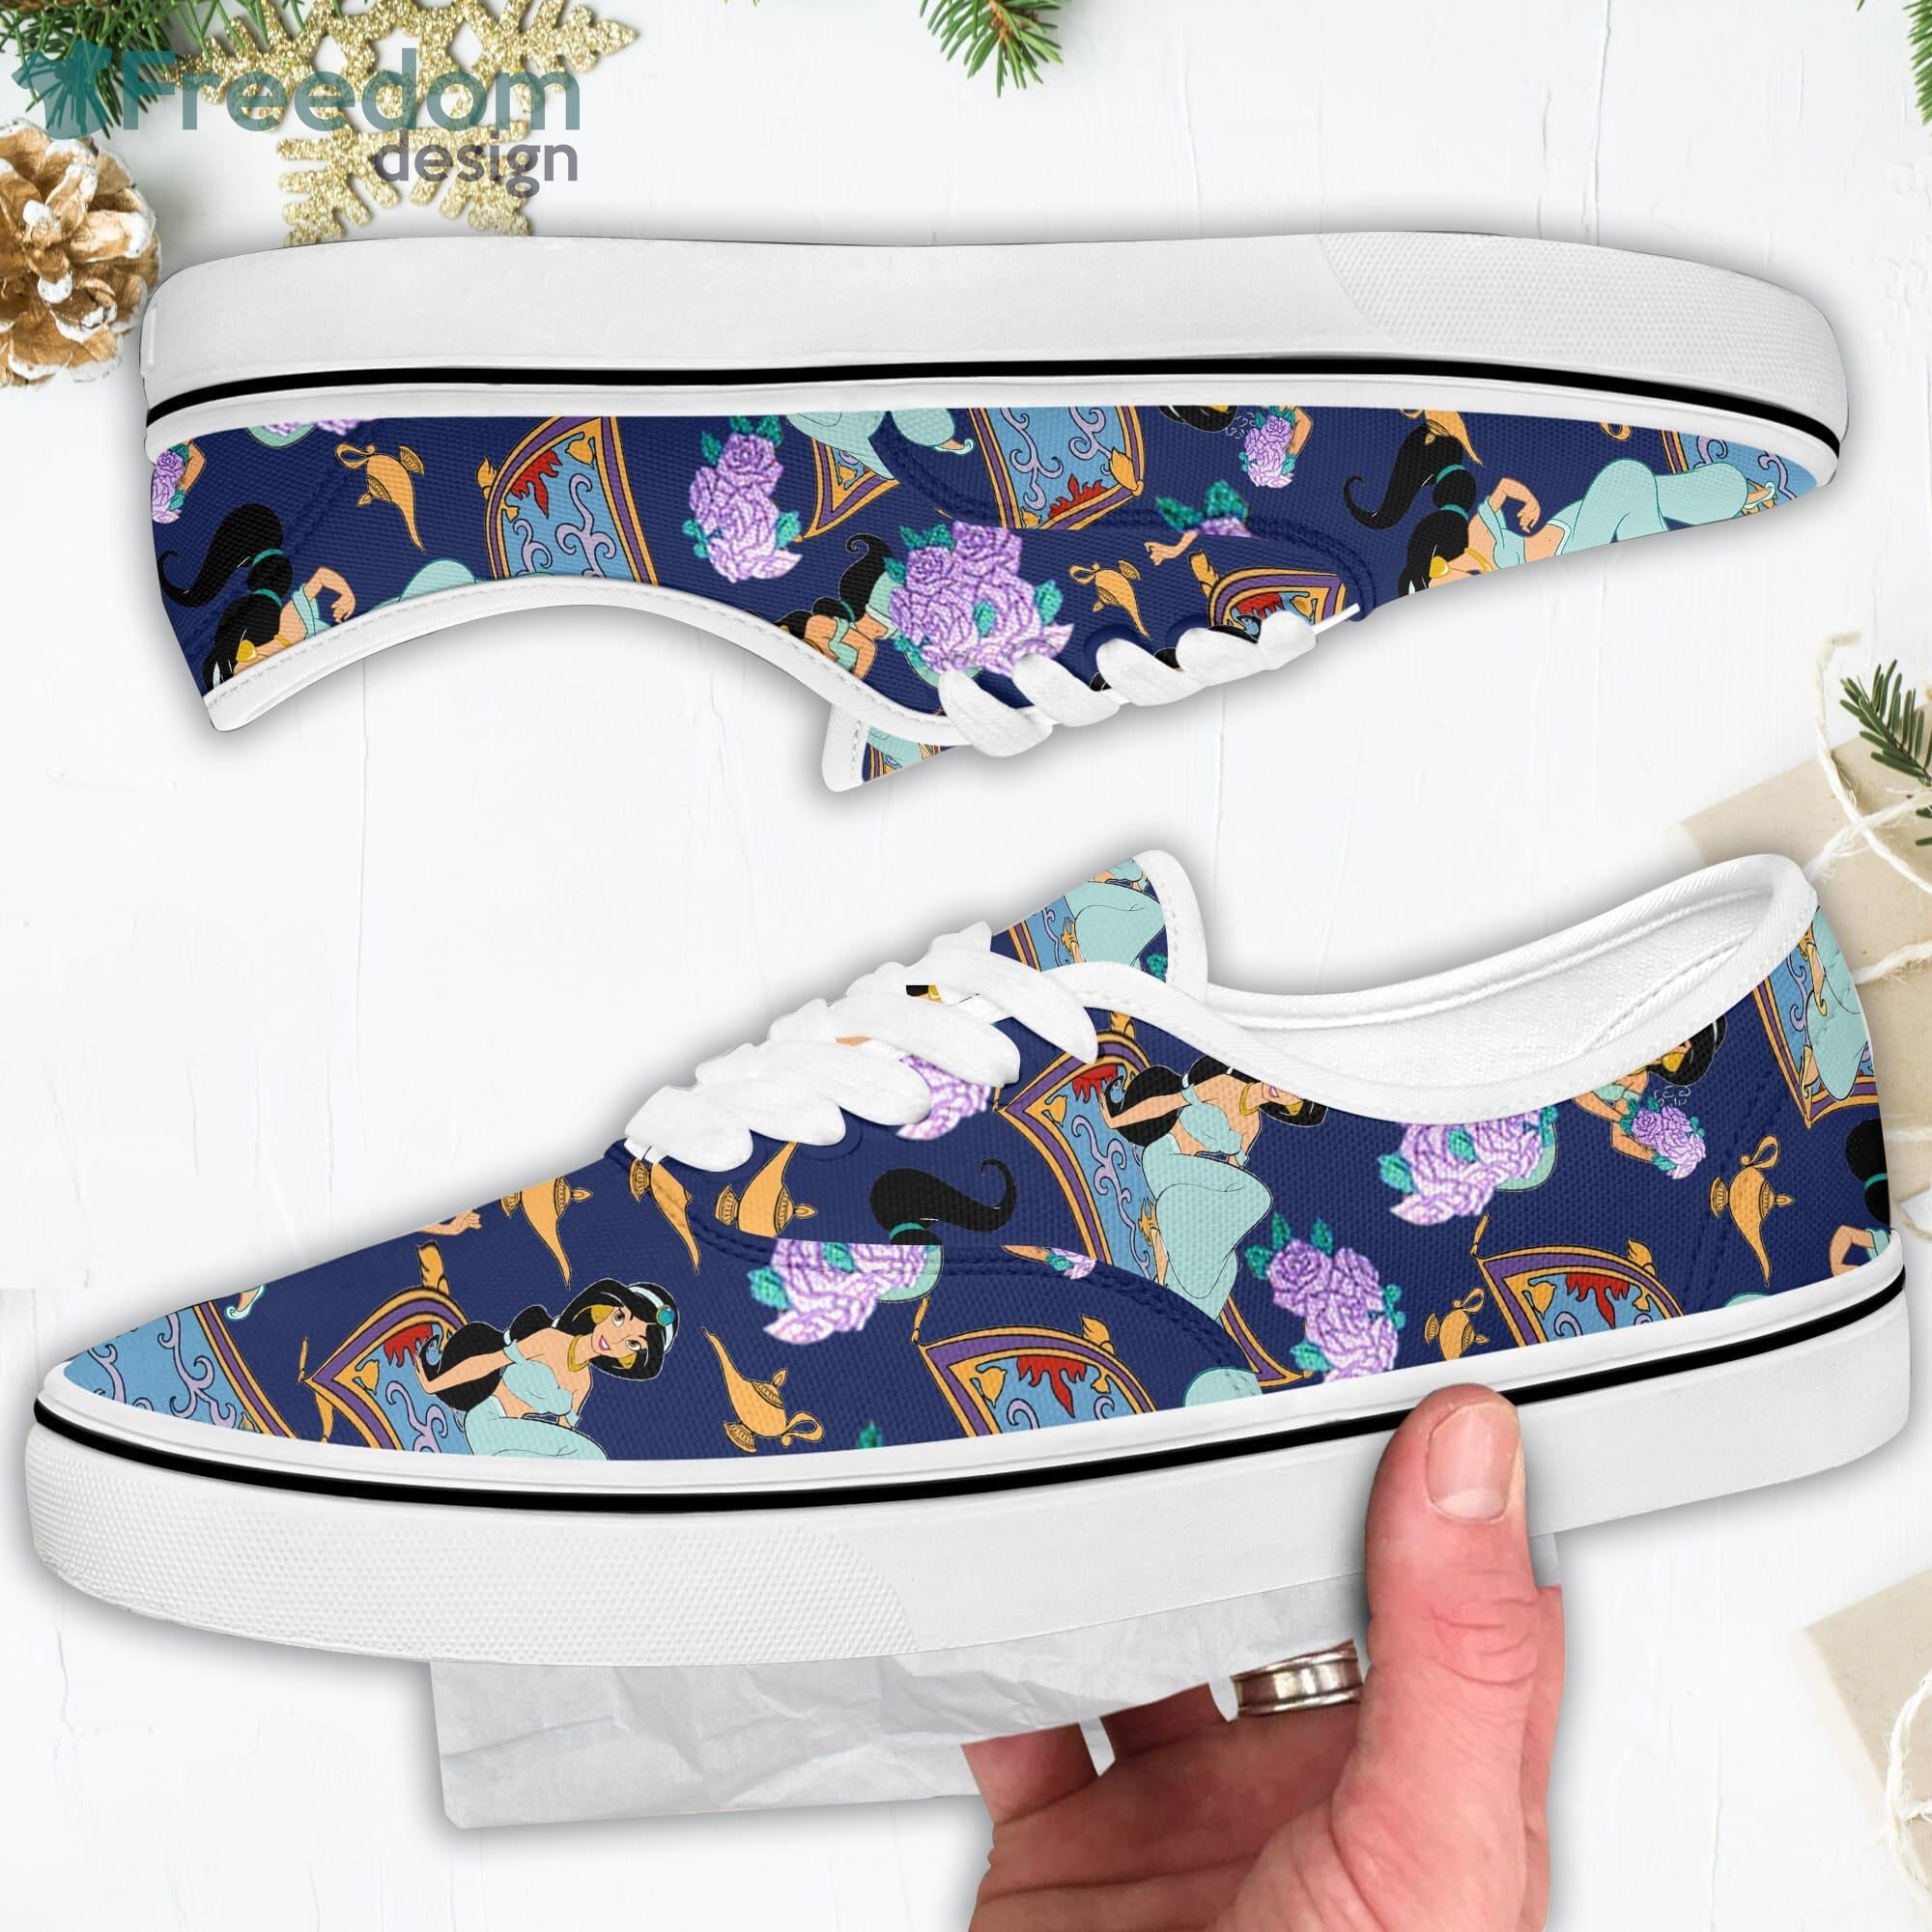 verkiezen Autonoom Perforeren Jasmine Patterns Disney Cartoon Low Top Slip On Lace Up Canvas Vans Shoes -  Freedomdesign